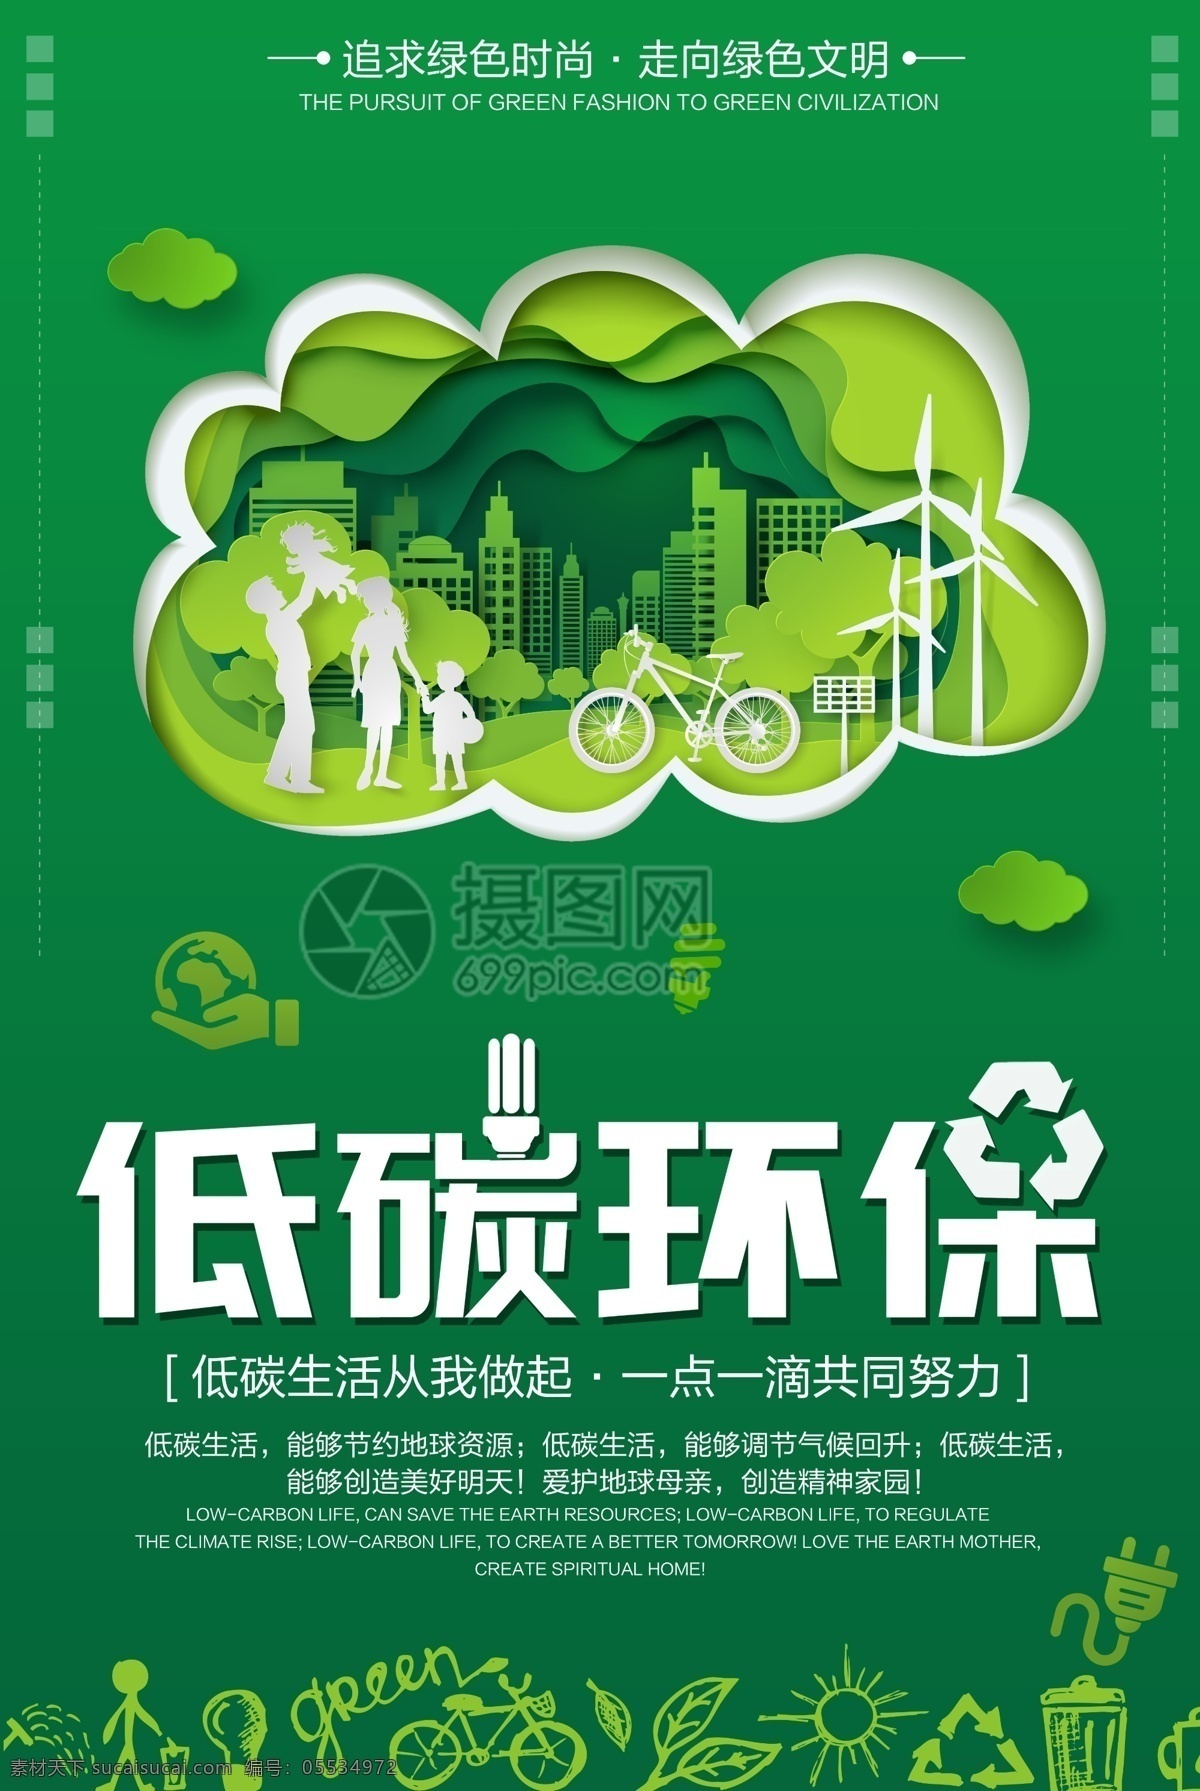 绿色 低 碳 环保 健康生活 海报 公益海报 低碳 低碳环保 绿色生活 保护环境 剪纸风